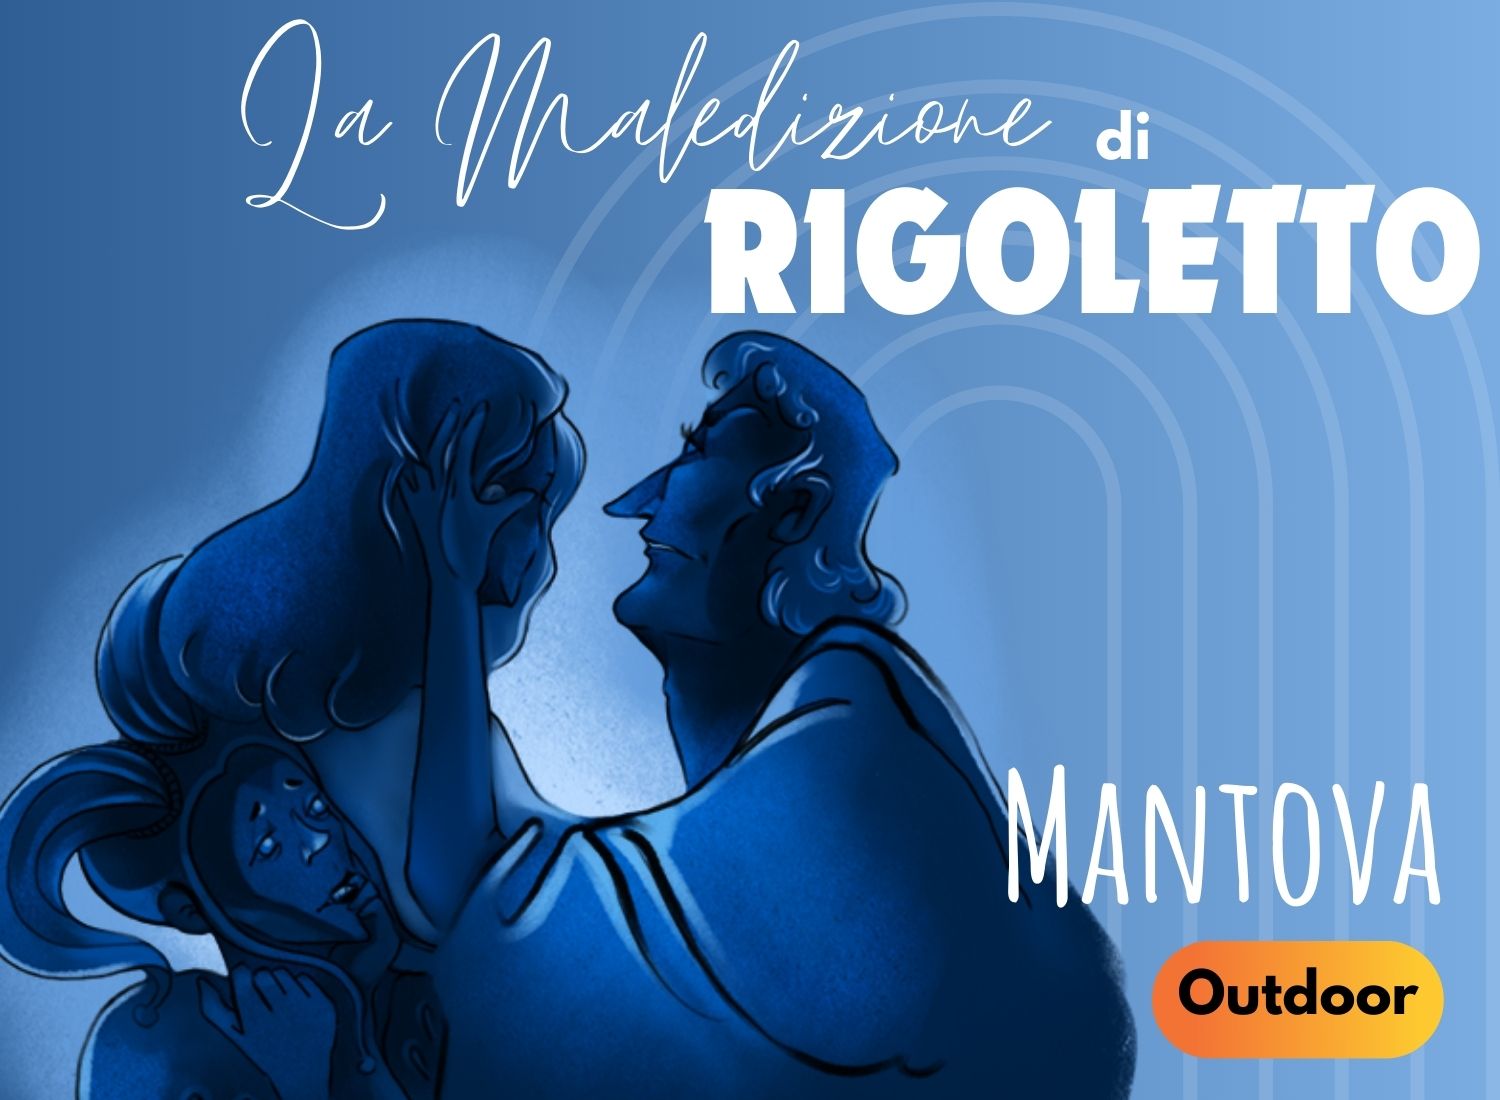 City Escape Mantova - Rigoletto